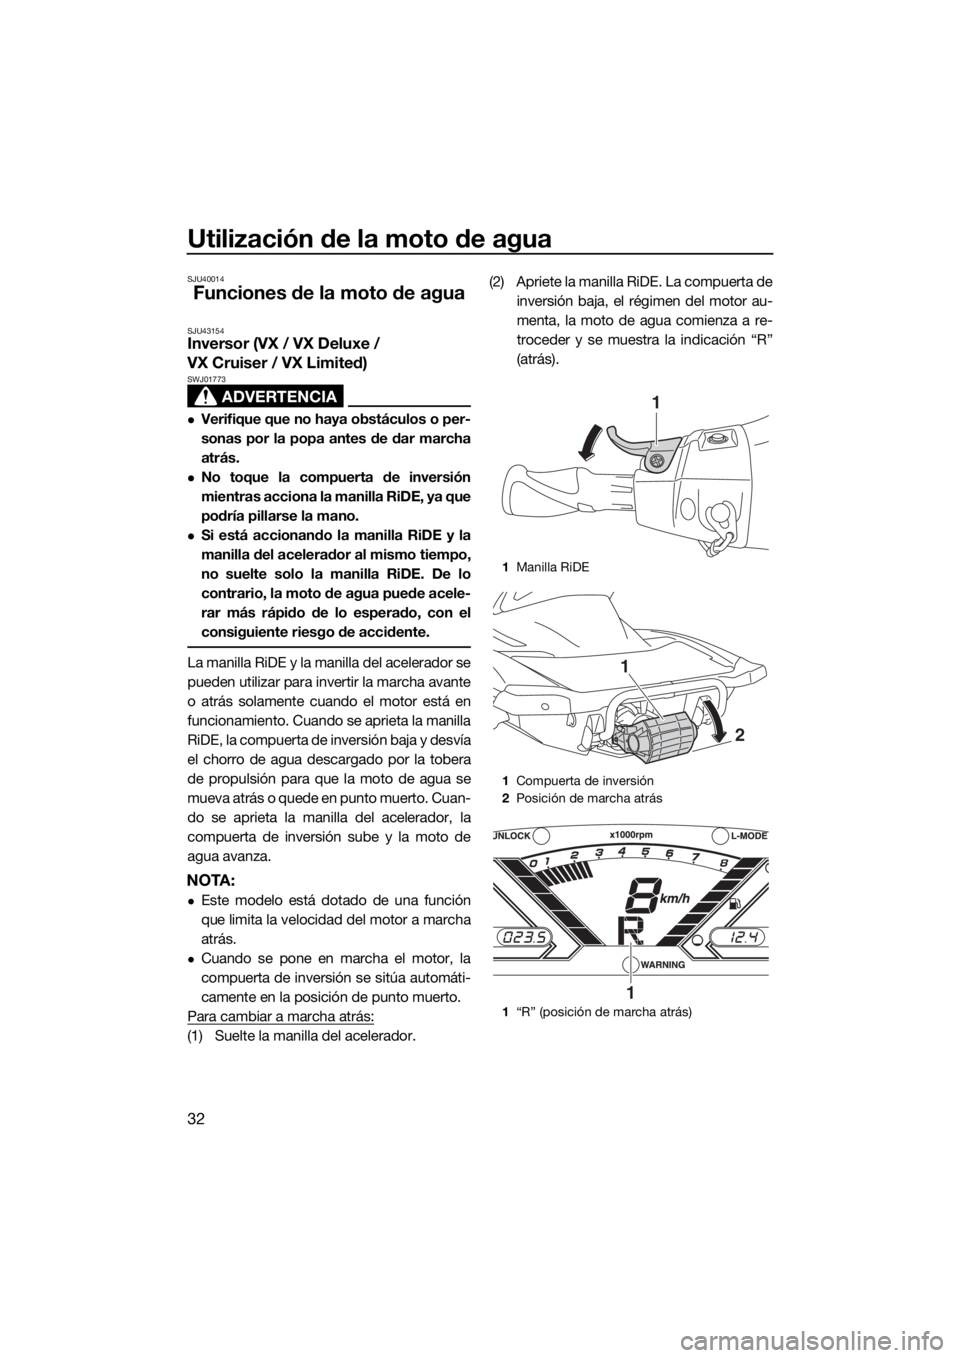 YAMAHA VX 2020  Manuale de Empleo (in Spanish) Utilización de la moto de agua
32
SJU40014
Funciones de la moto de agua
SJU43154Inversor (VX / VX Deluxe / 
VX Cruiser / VX Limited)
ADVERTENCIA
SWJ01773
Verifique que no haya obstáculos o per-
s